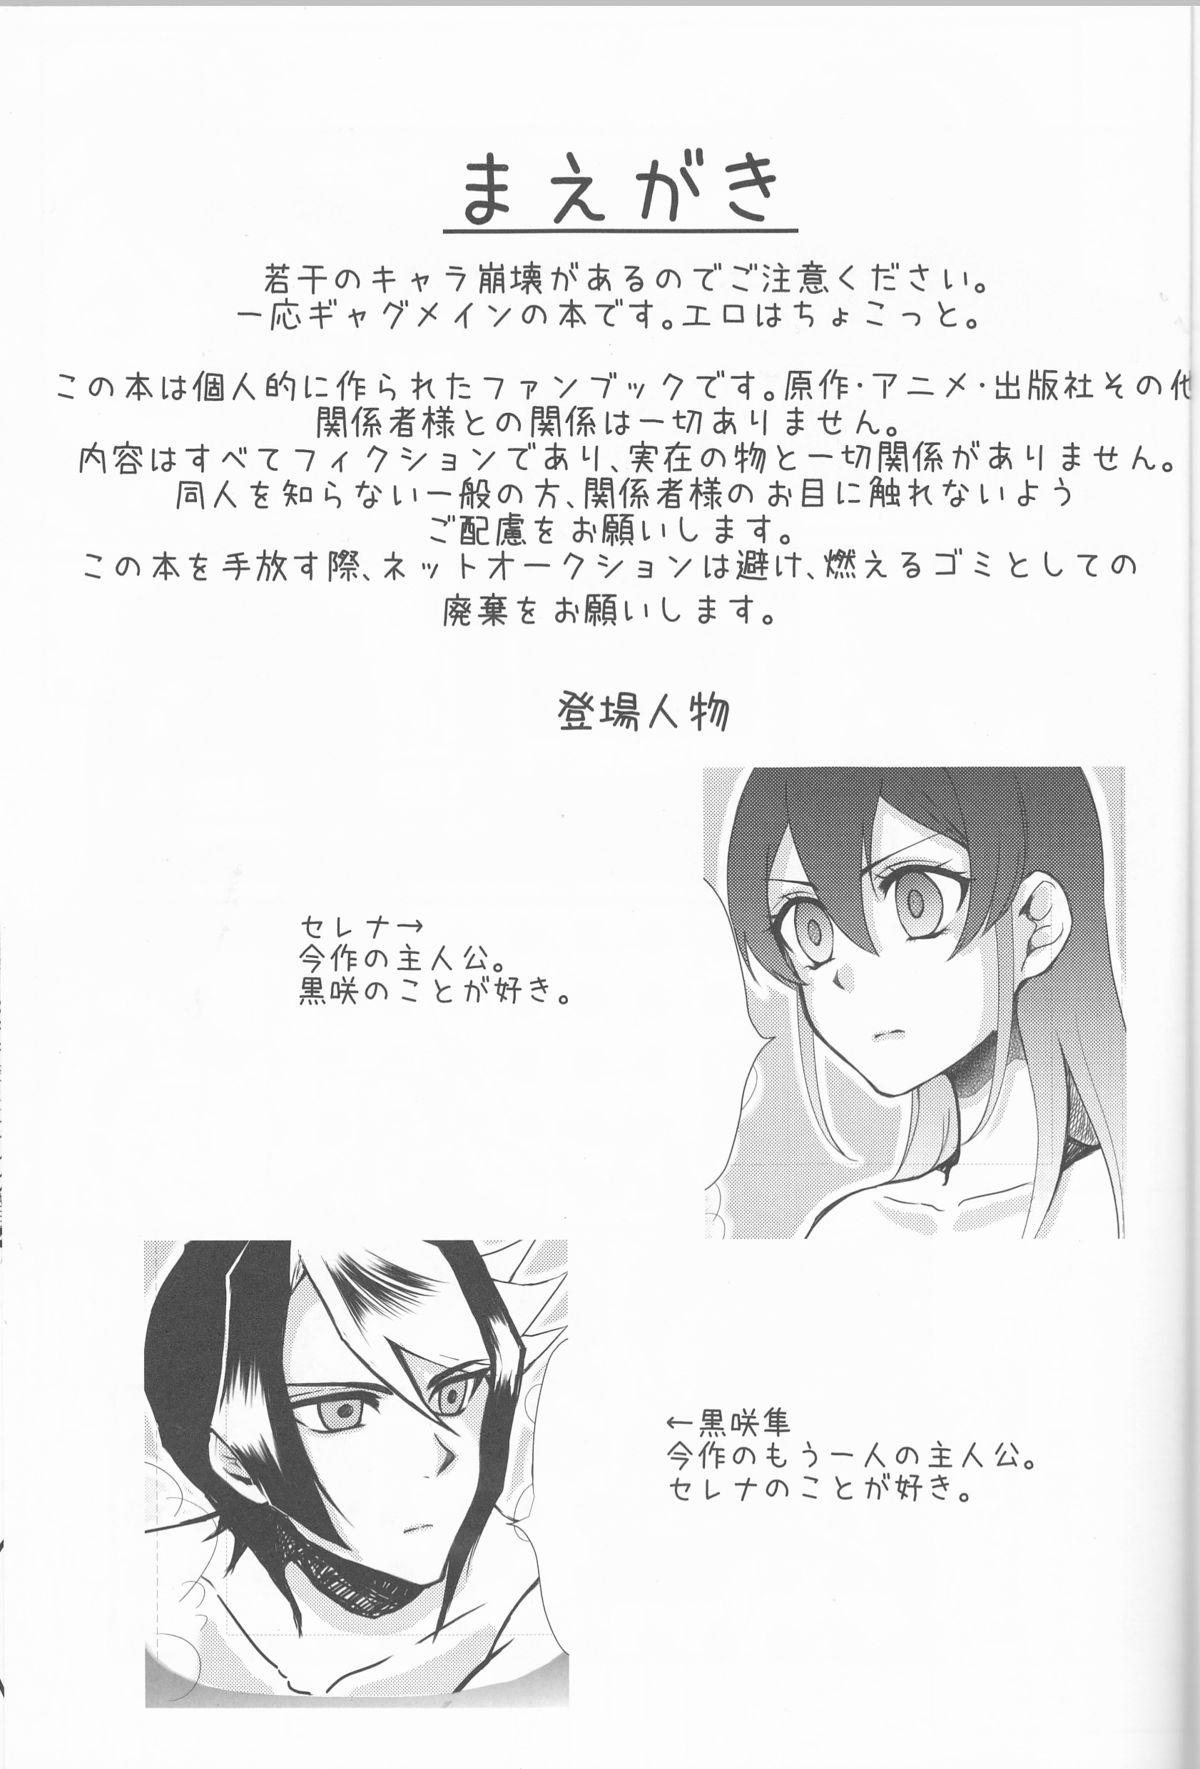 Neighbor Hoshoku Kankei ni Aru Serena to Shun ga Renai Kanjou o Idaku to Kou Naru. - Yu gi oh arc v Home - Page 2